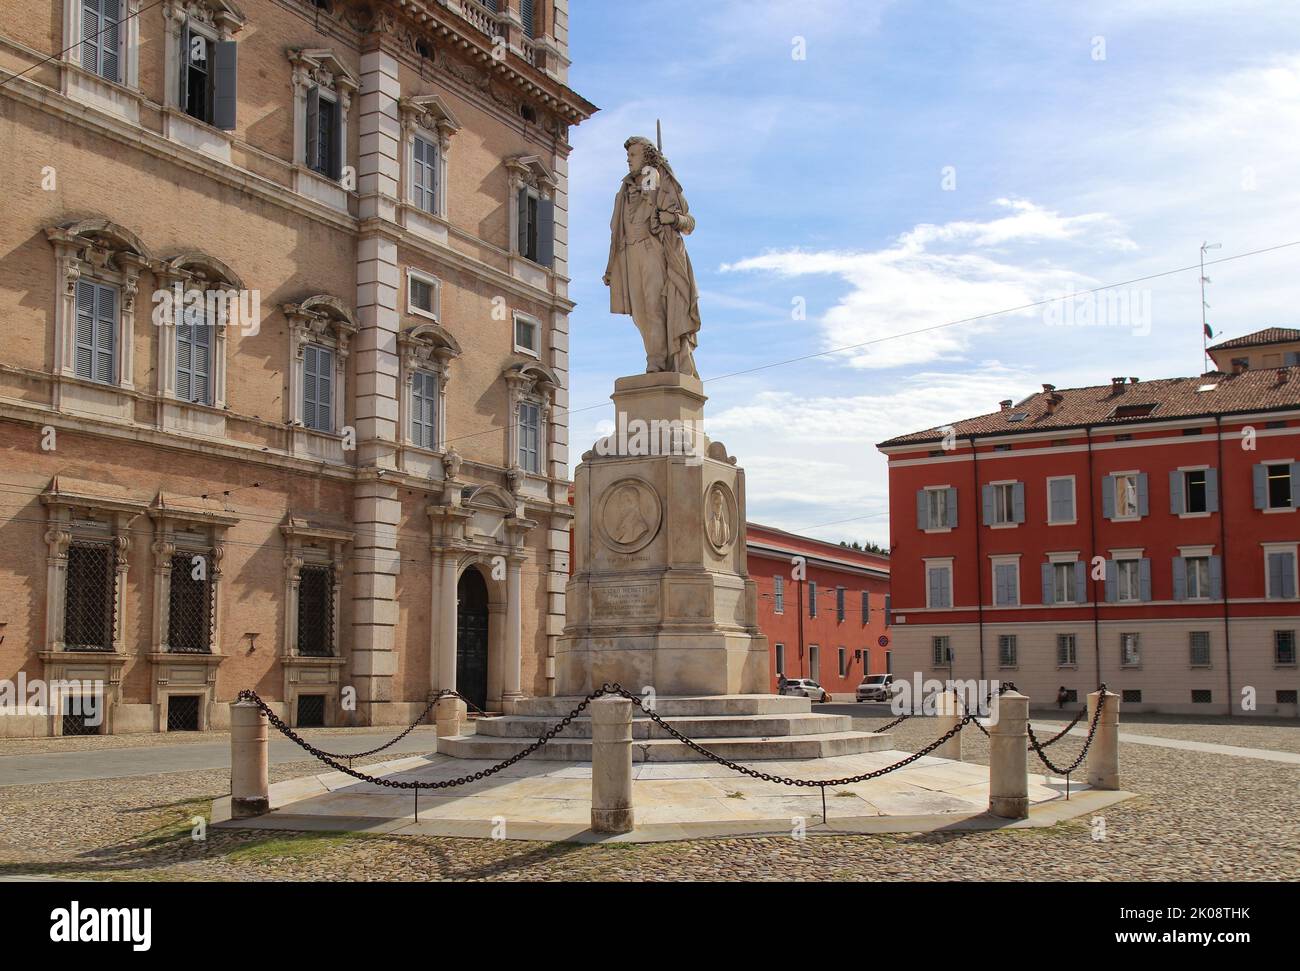 Monument to Ciro Menotti in Piazza Roma (Rome square), city of Modena, Italy, touristic place Stock Photo